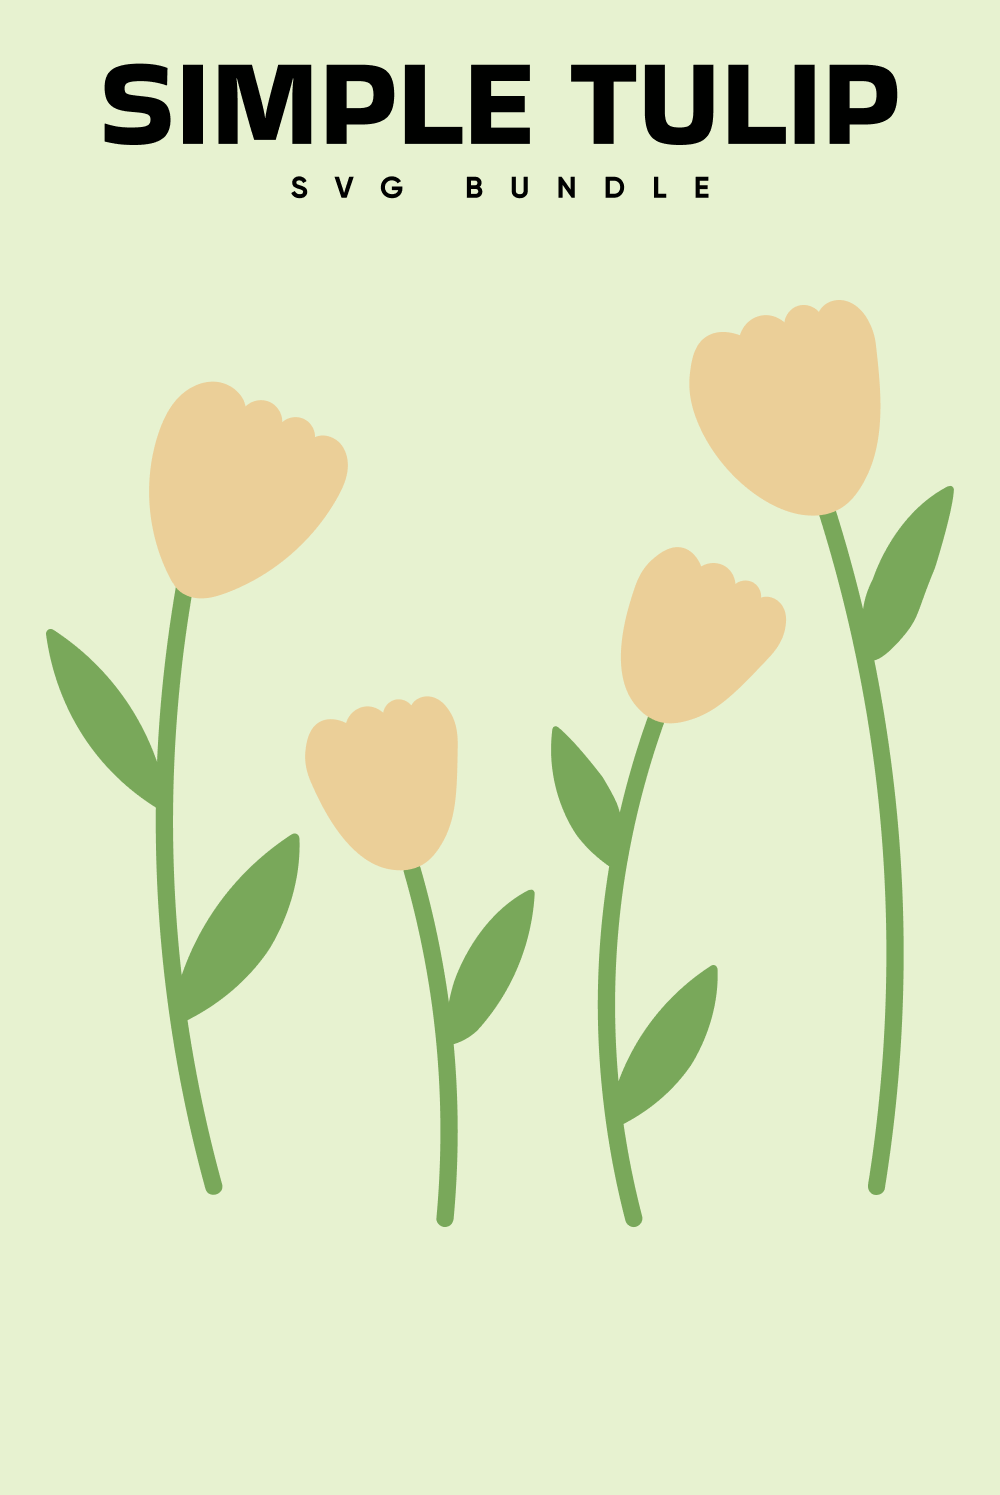 Simple Tulip SVG Bundle, picture for pinterest 1000x1500.